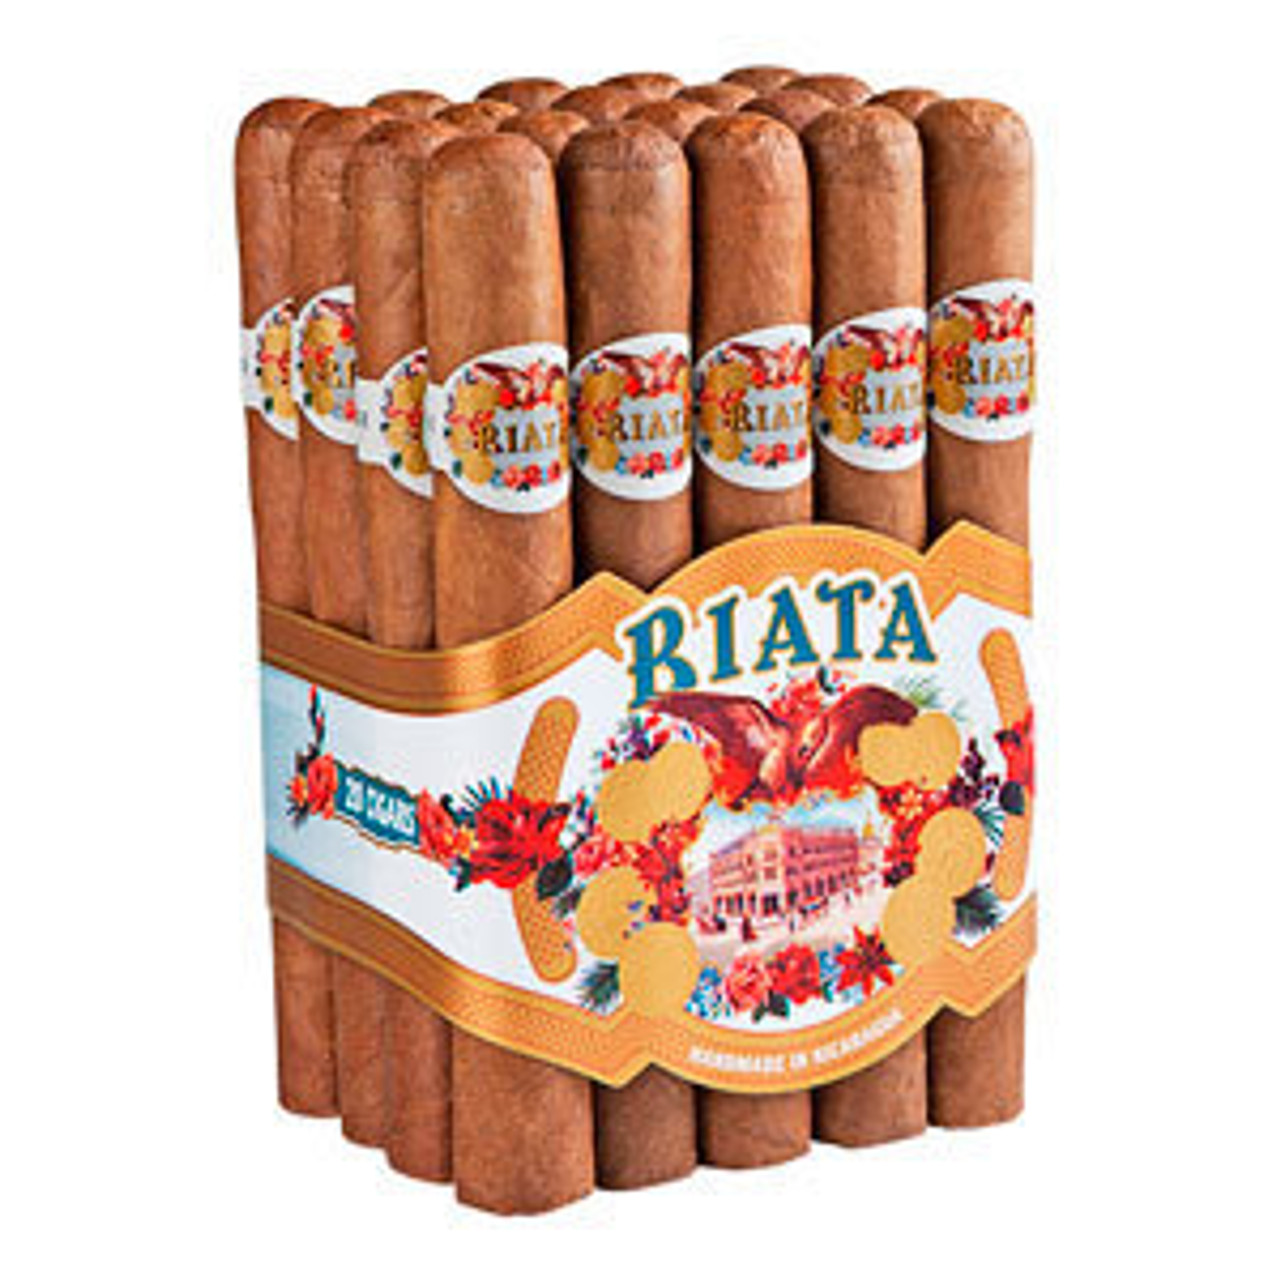 Riata No. 500 Cigars - 6.62 x 44 (Bundle of 20) *Box